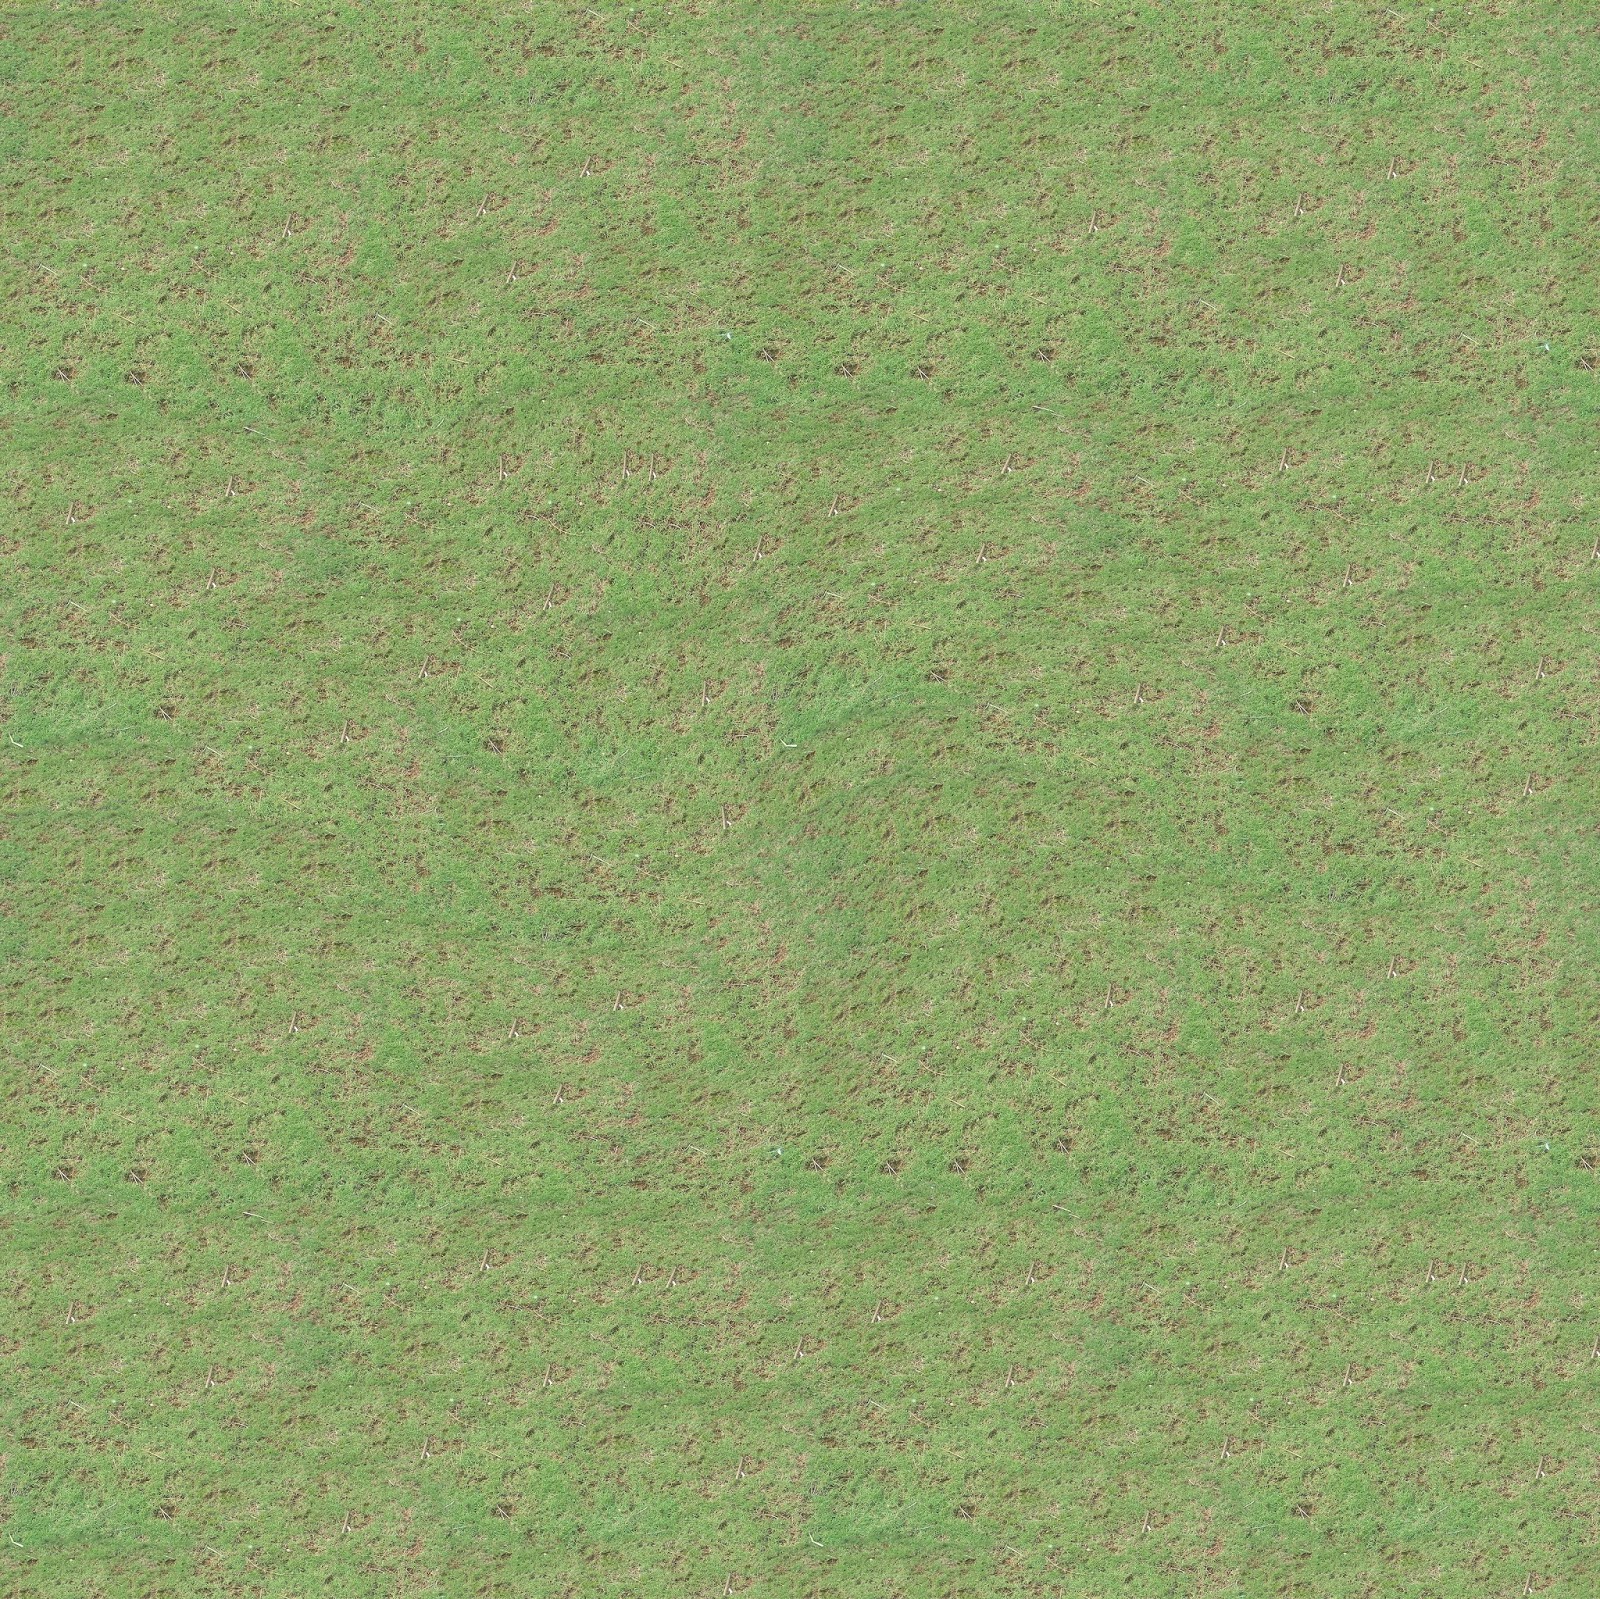 Grass Texture Map Seamless